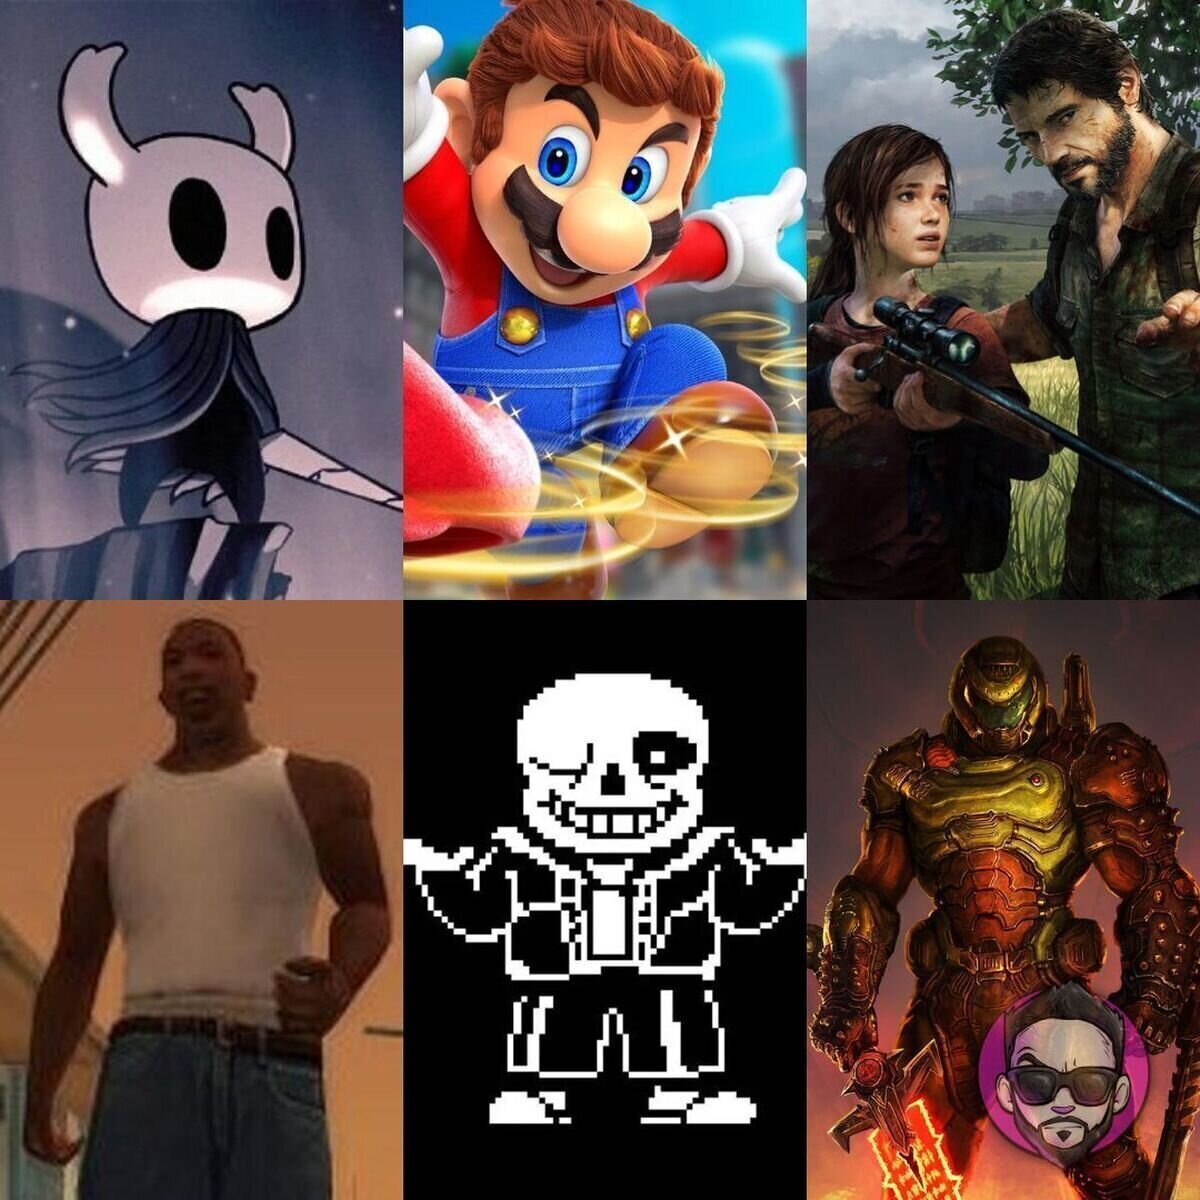 ¿Cuál es tu TOP 3 de videojuegos favoritos y porqué son tan especiales para ti? Por JuanitoSay